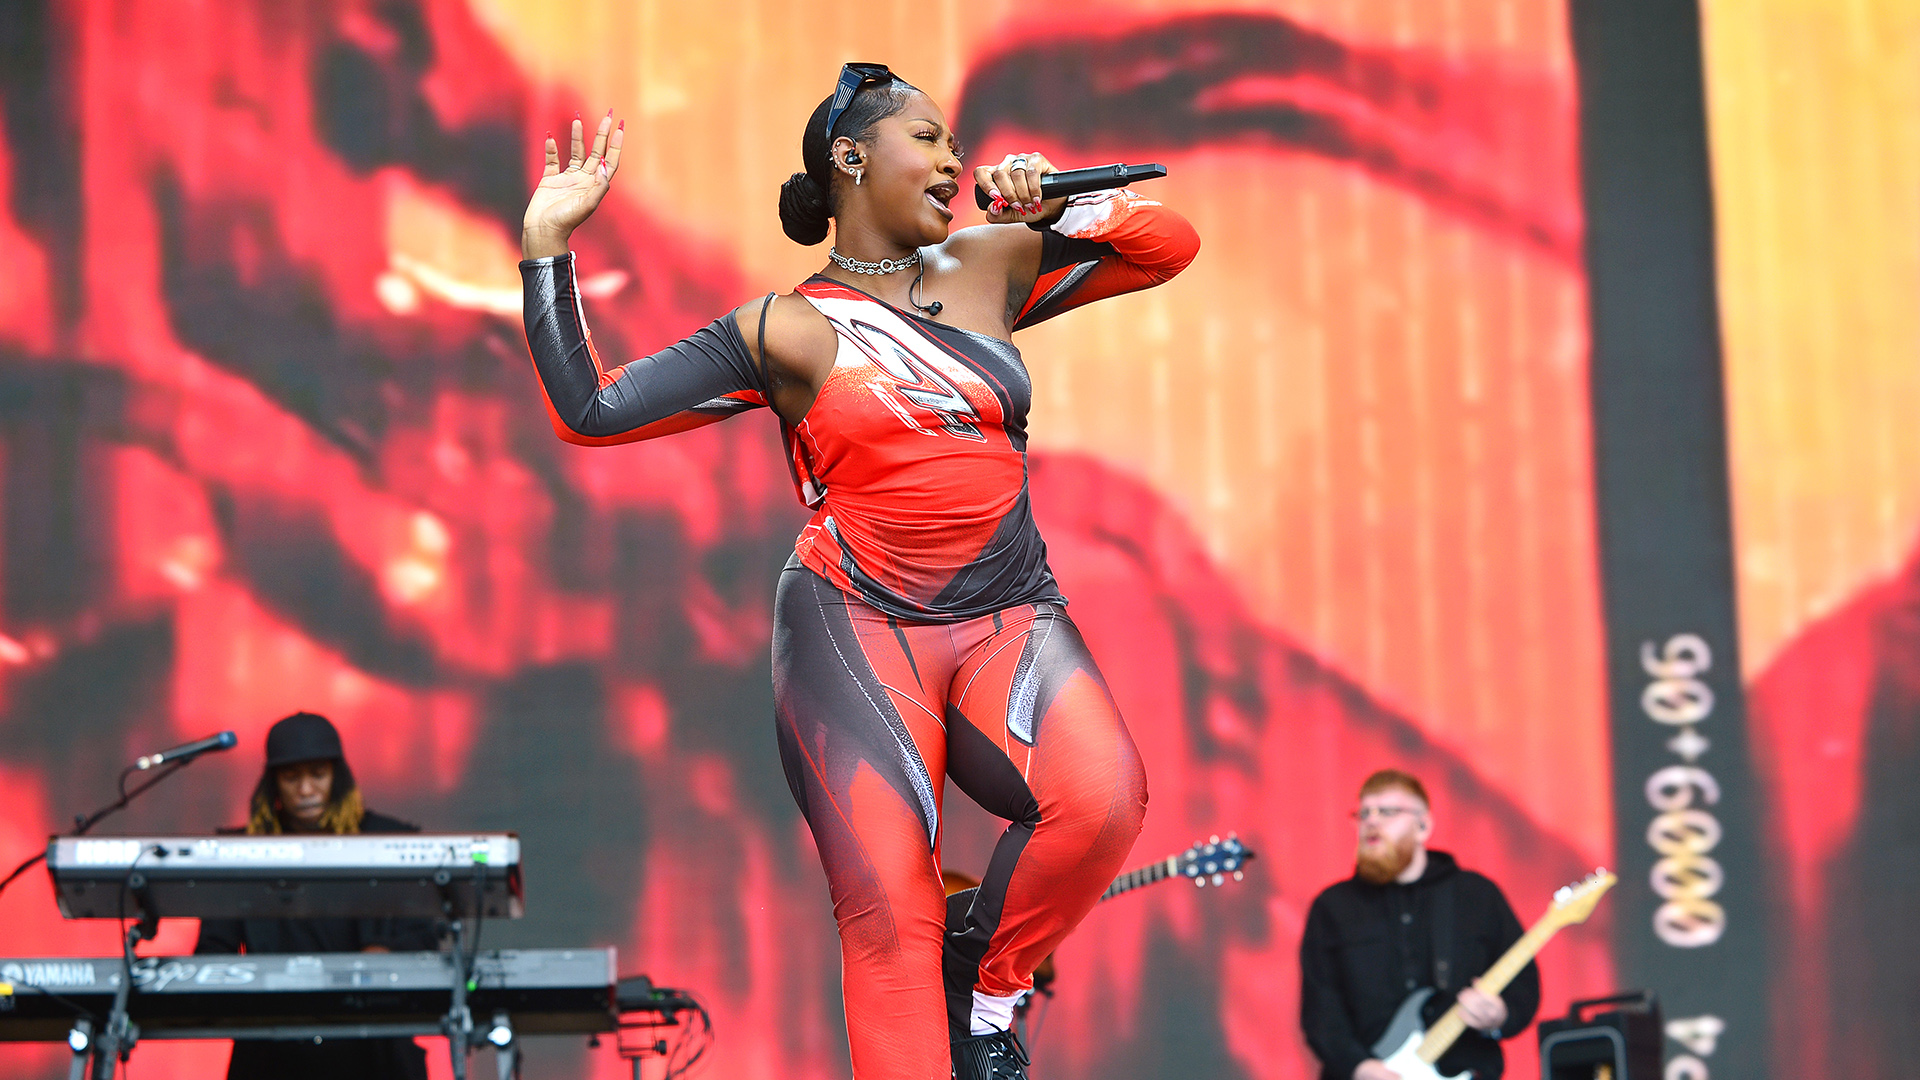 La cantante nigeriana Tems sobre el escenario "Other stage" de la edición 2022 del Festival de Glastonbury, Reino Unido (Foto: Jim Dyson/Getty Images)